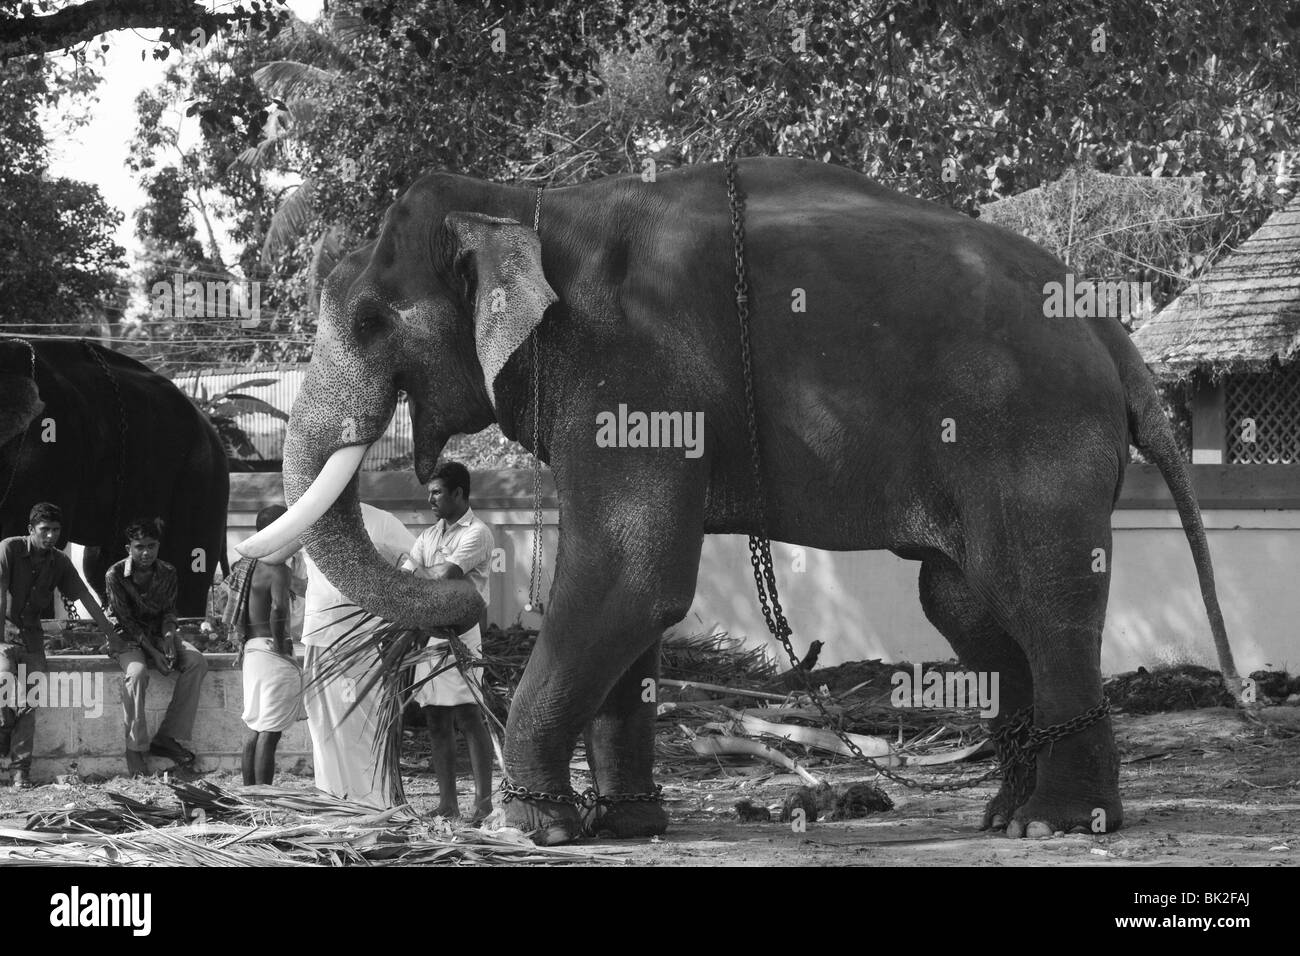 D'éléphants domestiqués en Asie à l'ombre d'un arbre Banque D'Images